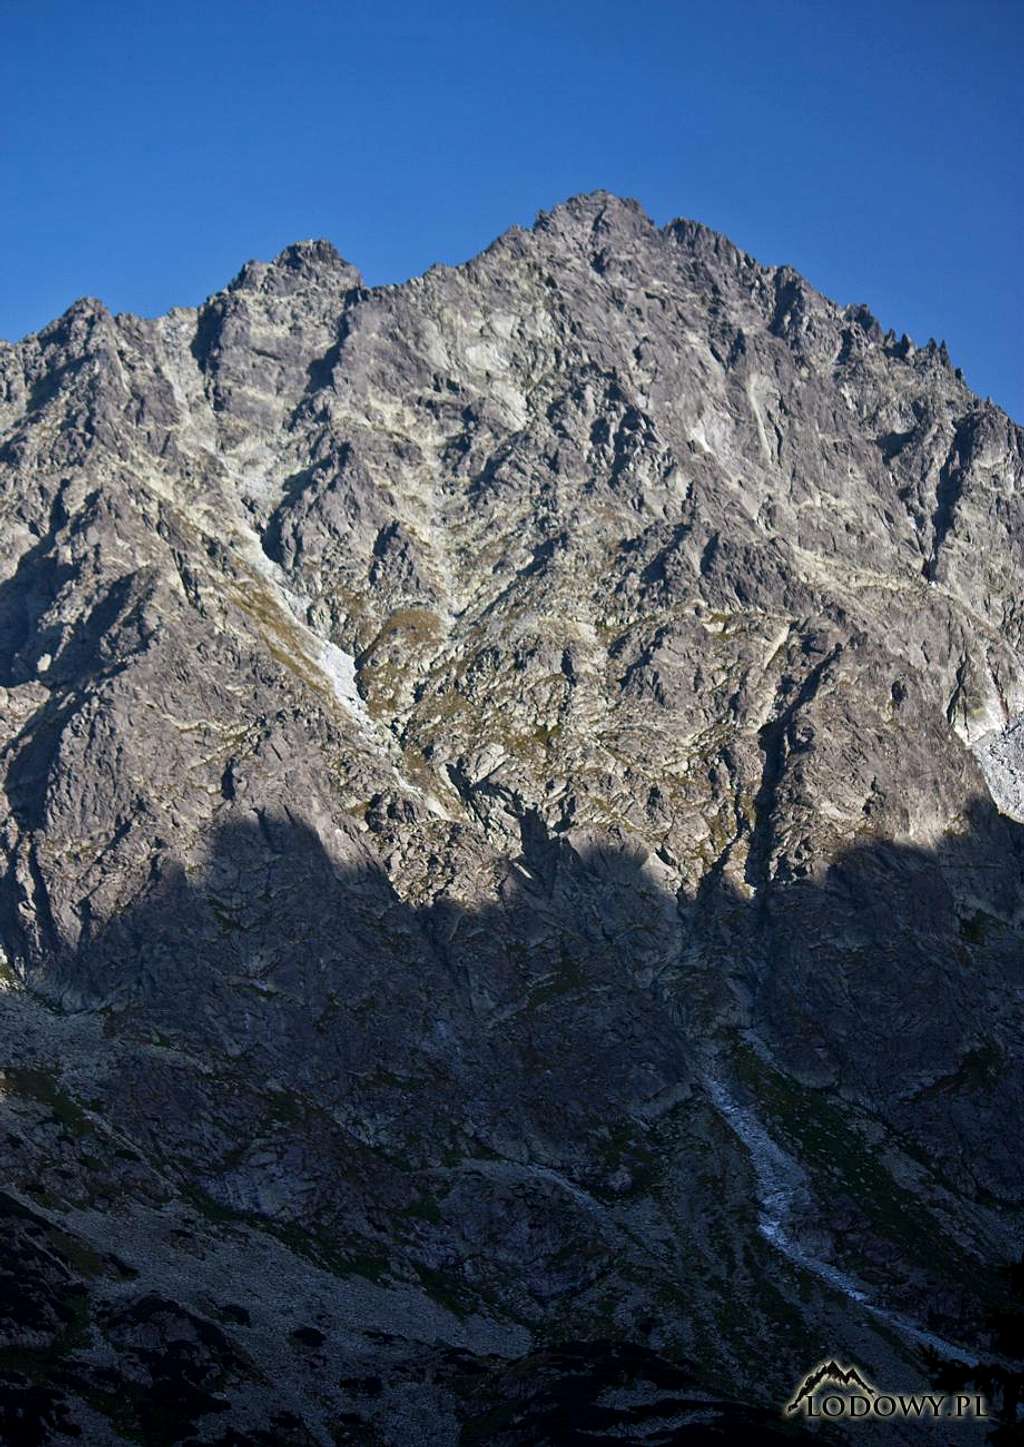 Zadny Gerlach peak